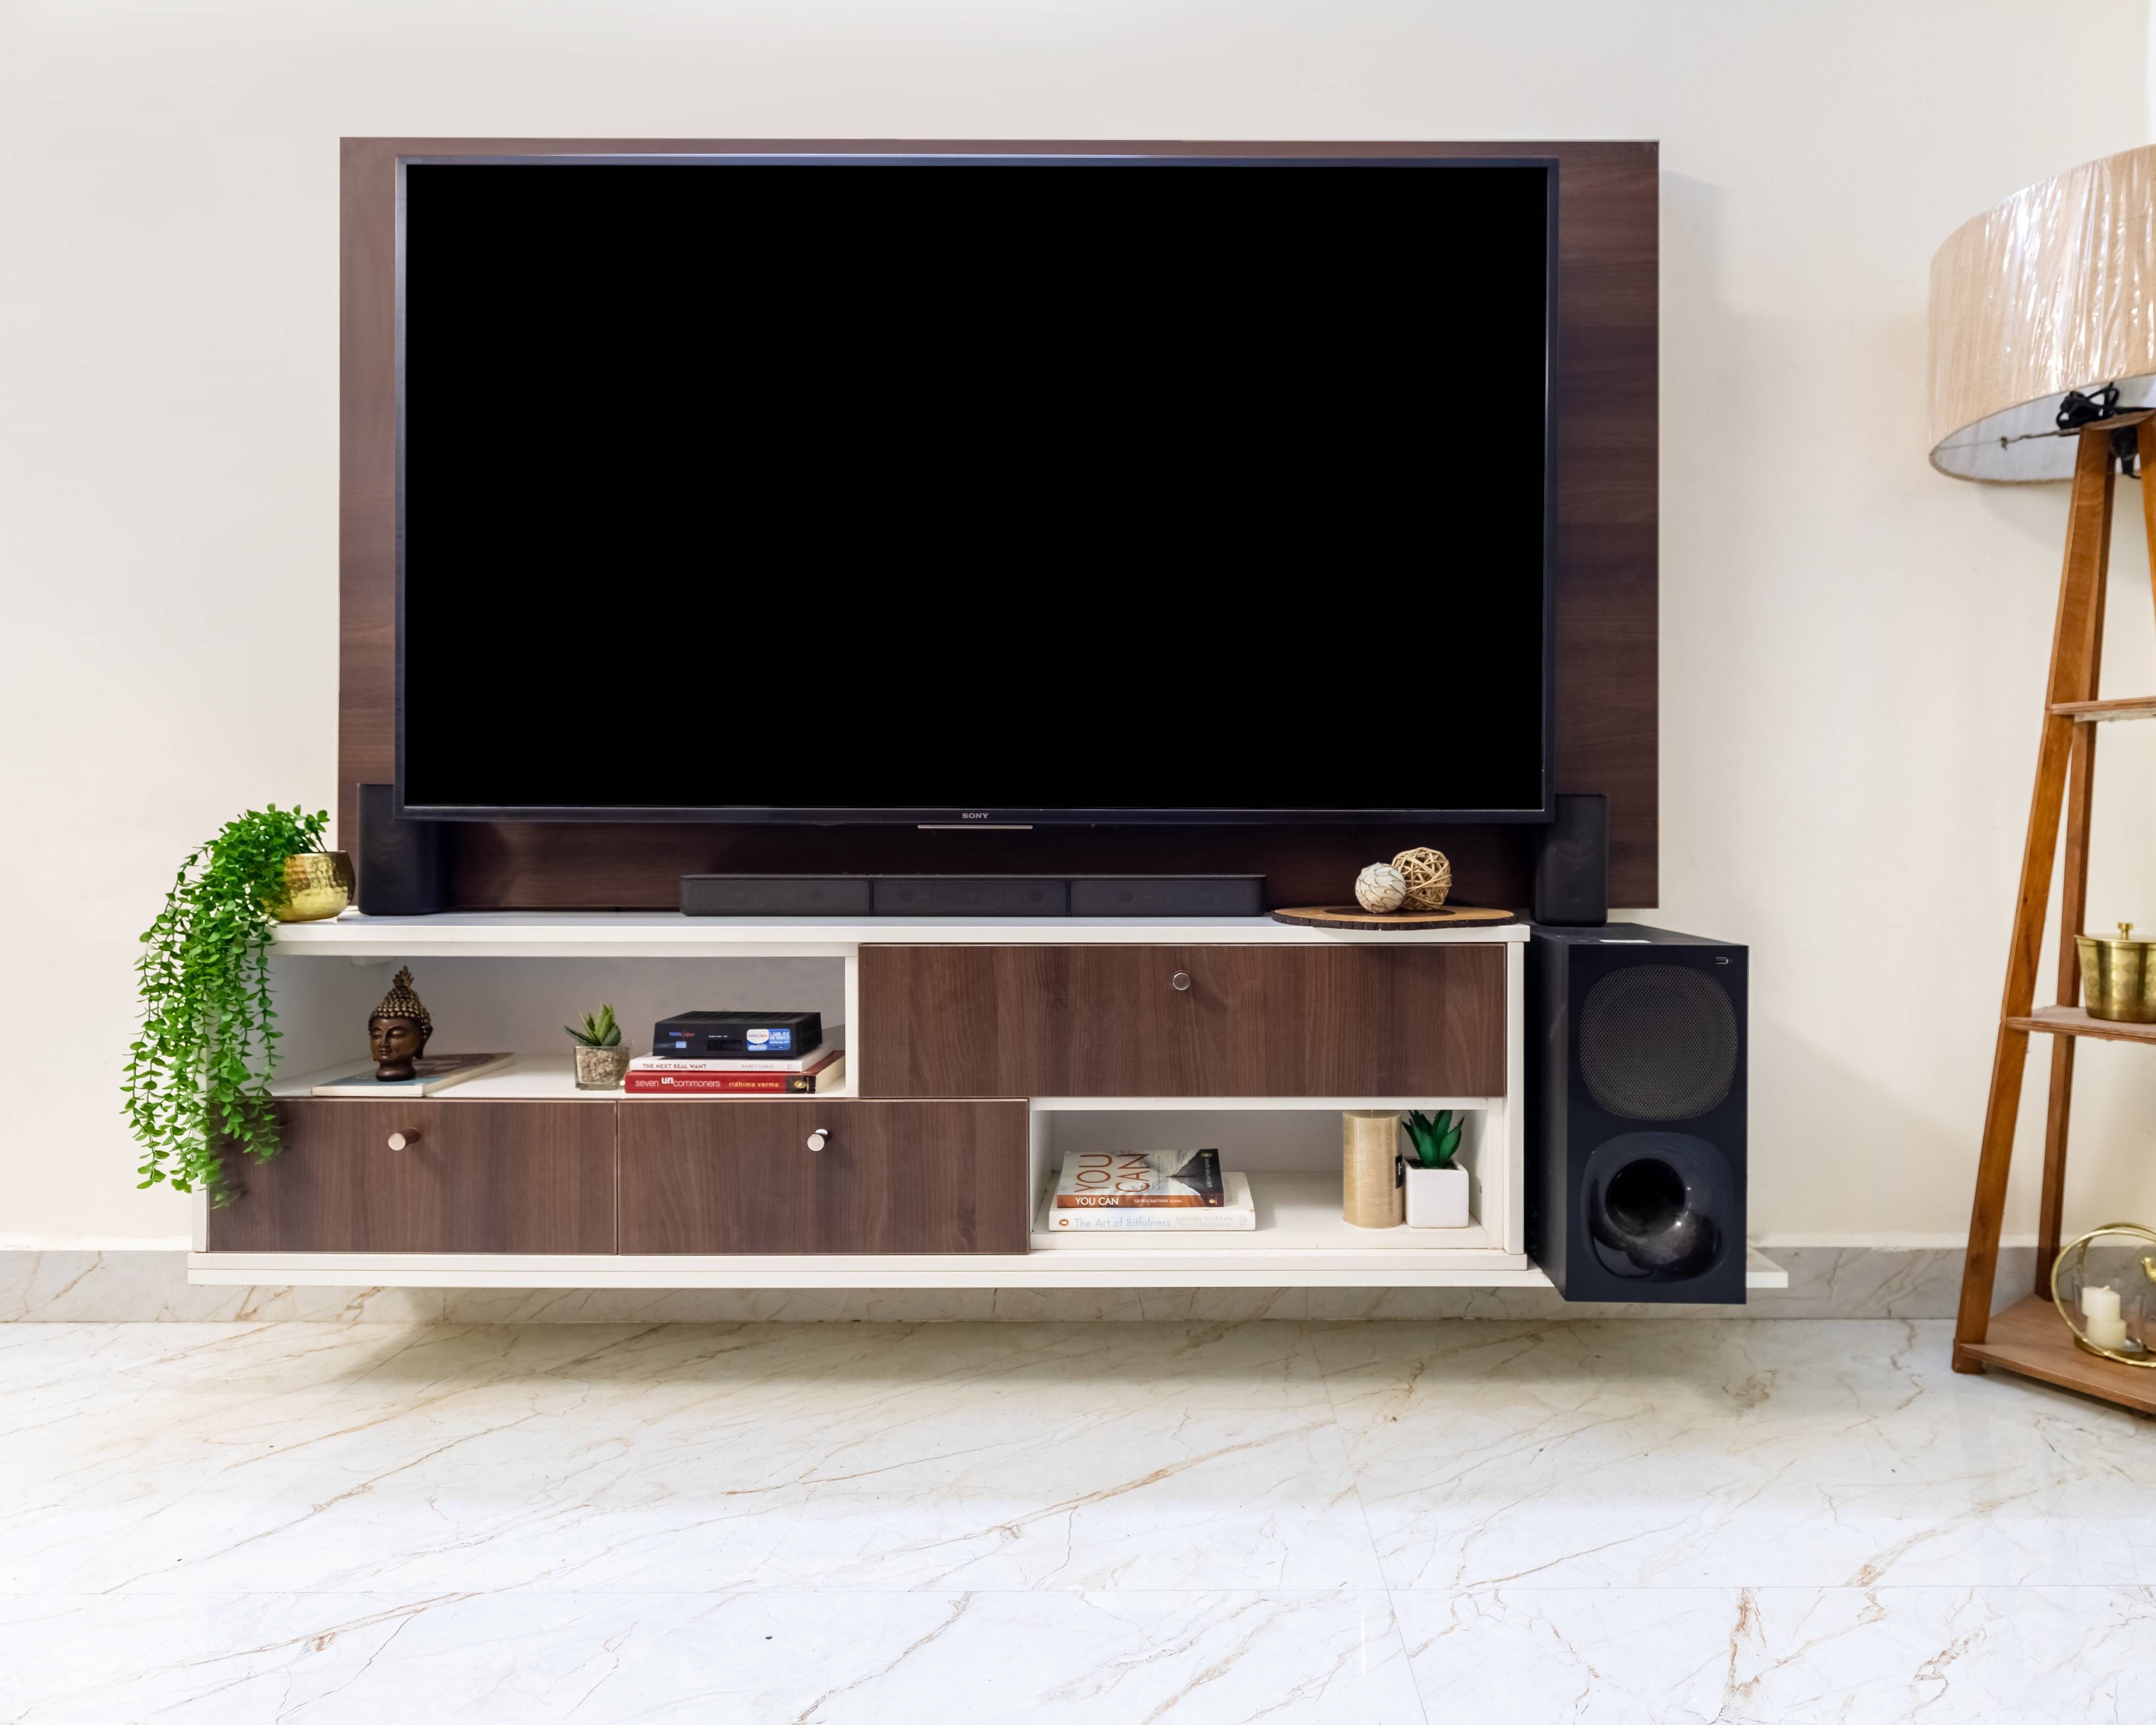 Modern TV Cabinet Design With Sleek Storage